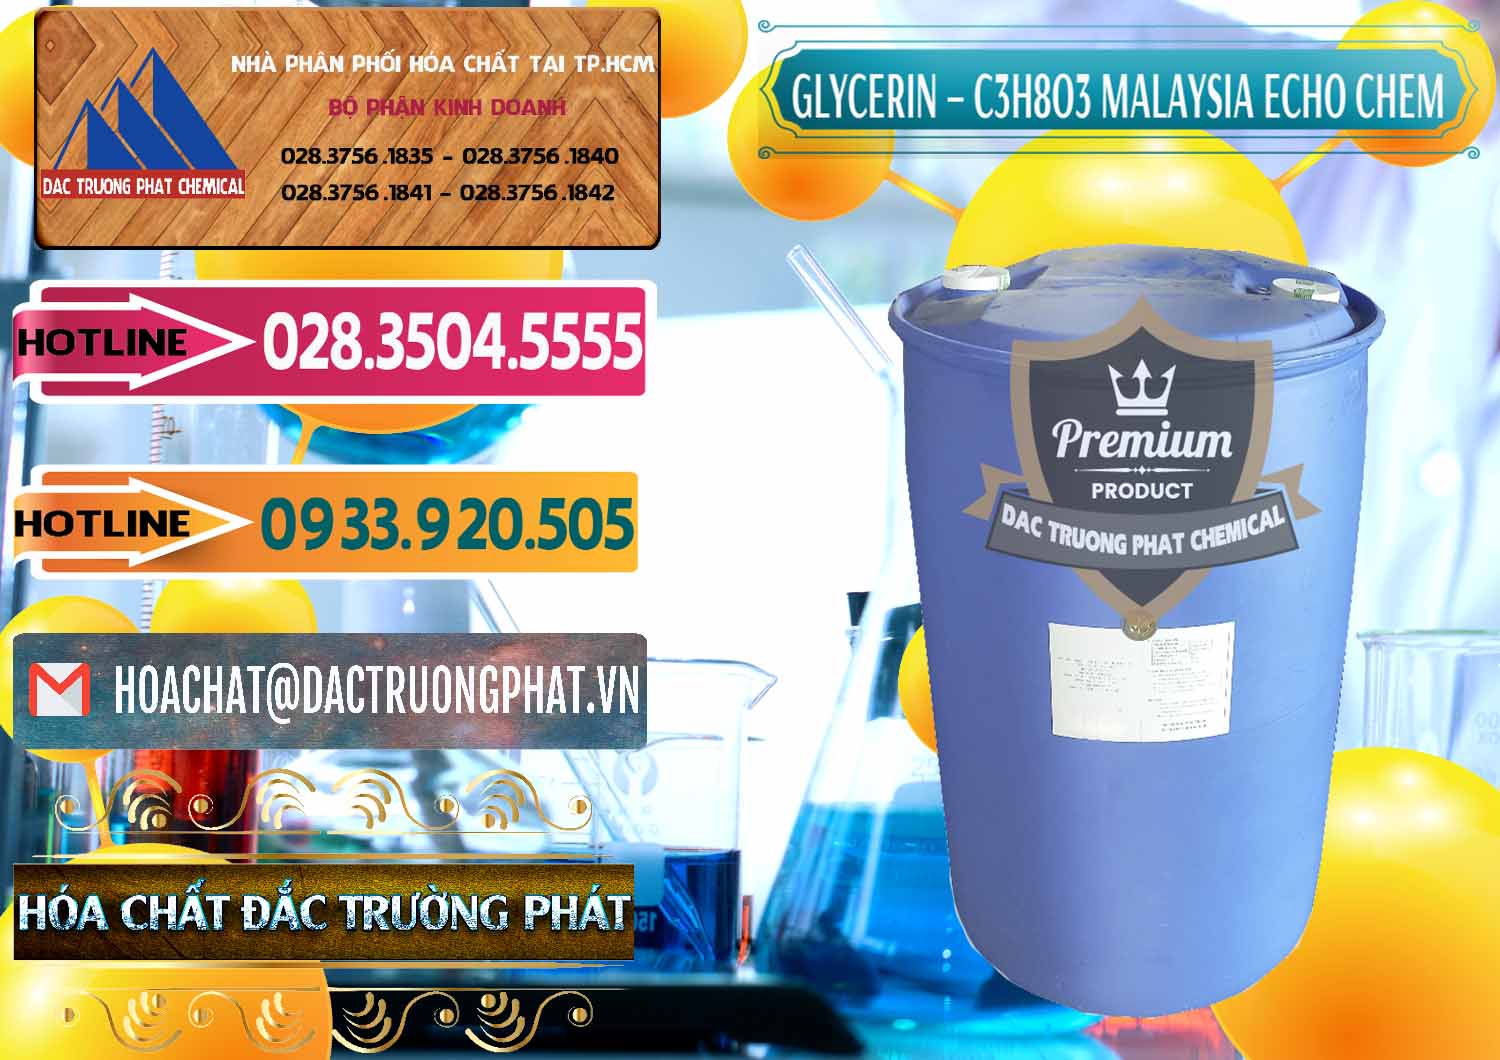 Cty cung cấp ( bán ) Glycerin – C3H8O3 99.7% Echo Chem Malaysia - 0273 - Nơi cung cấp ( phân phối ) hóa chất tại TP.HCM - dactruongphat.vn